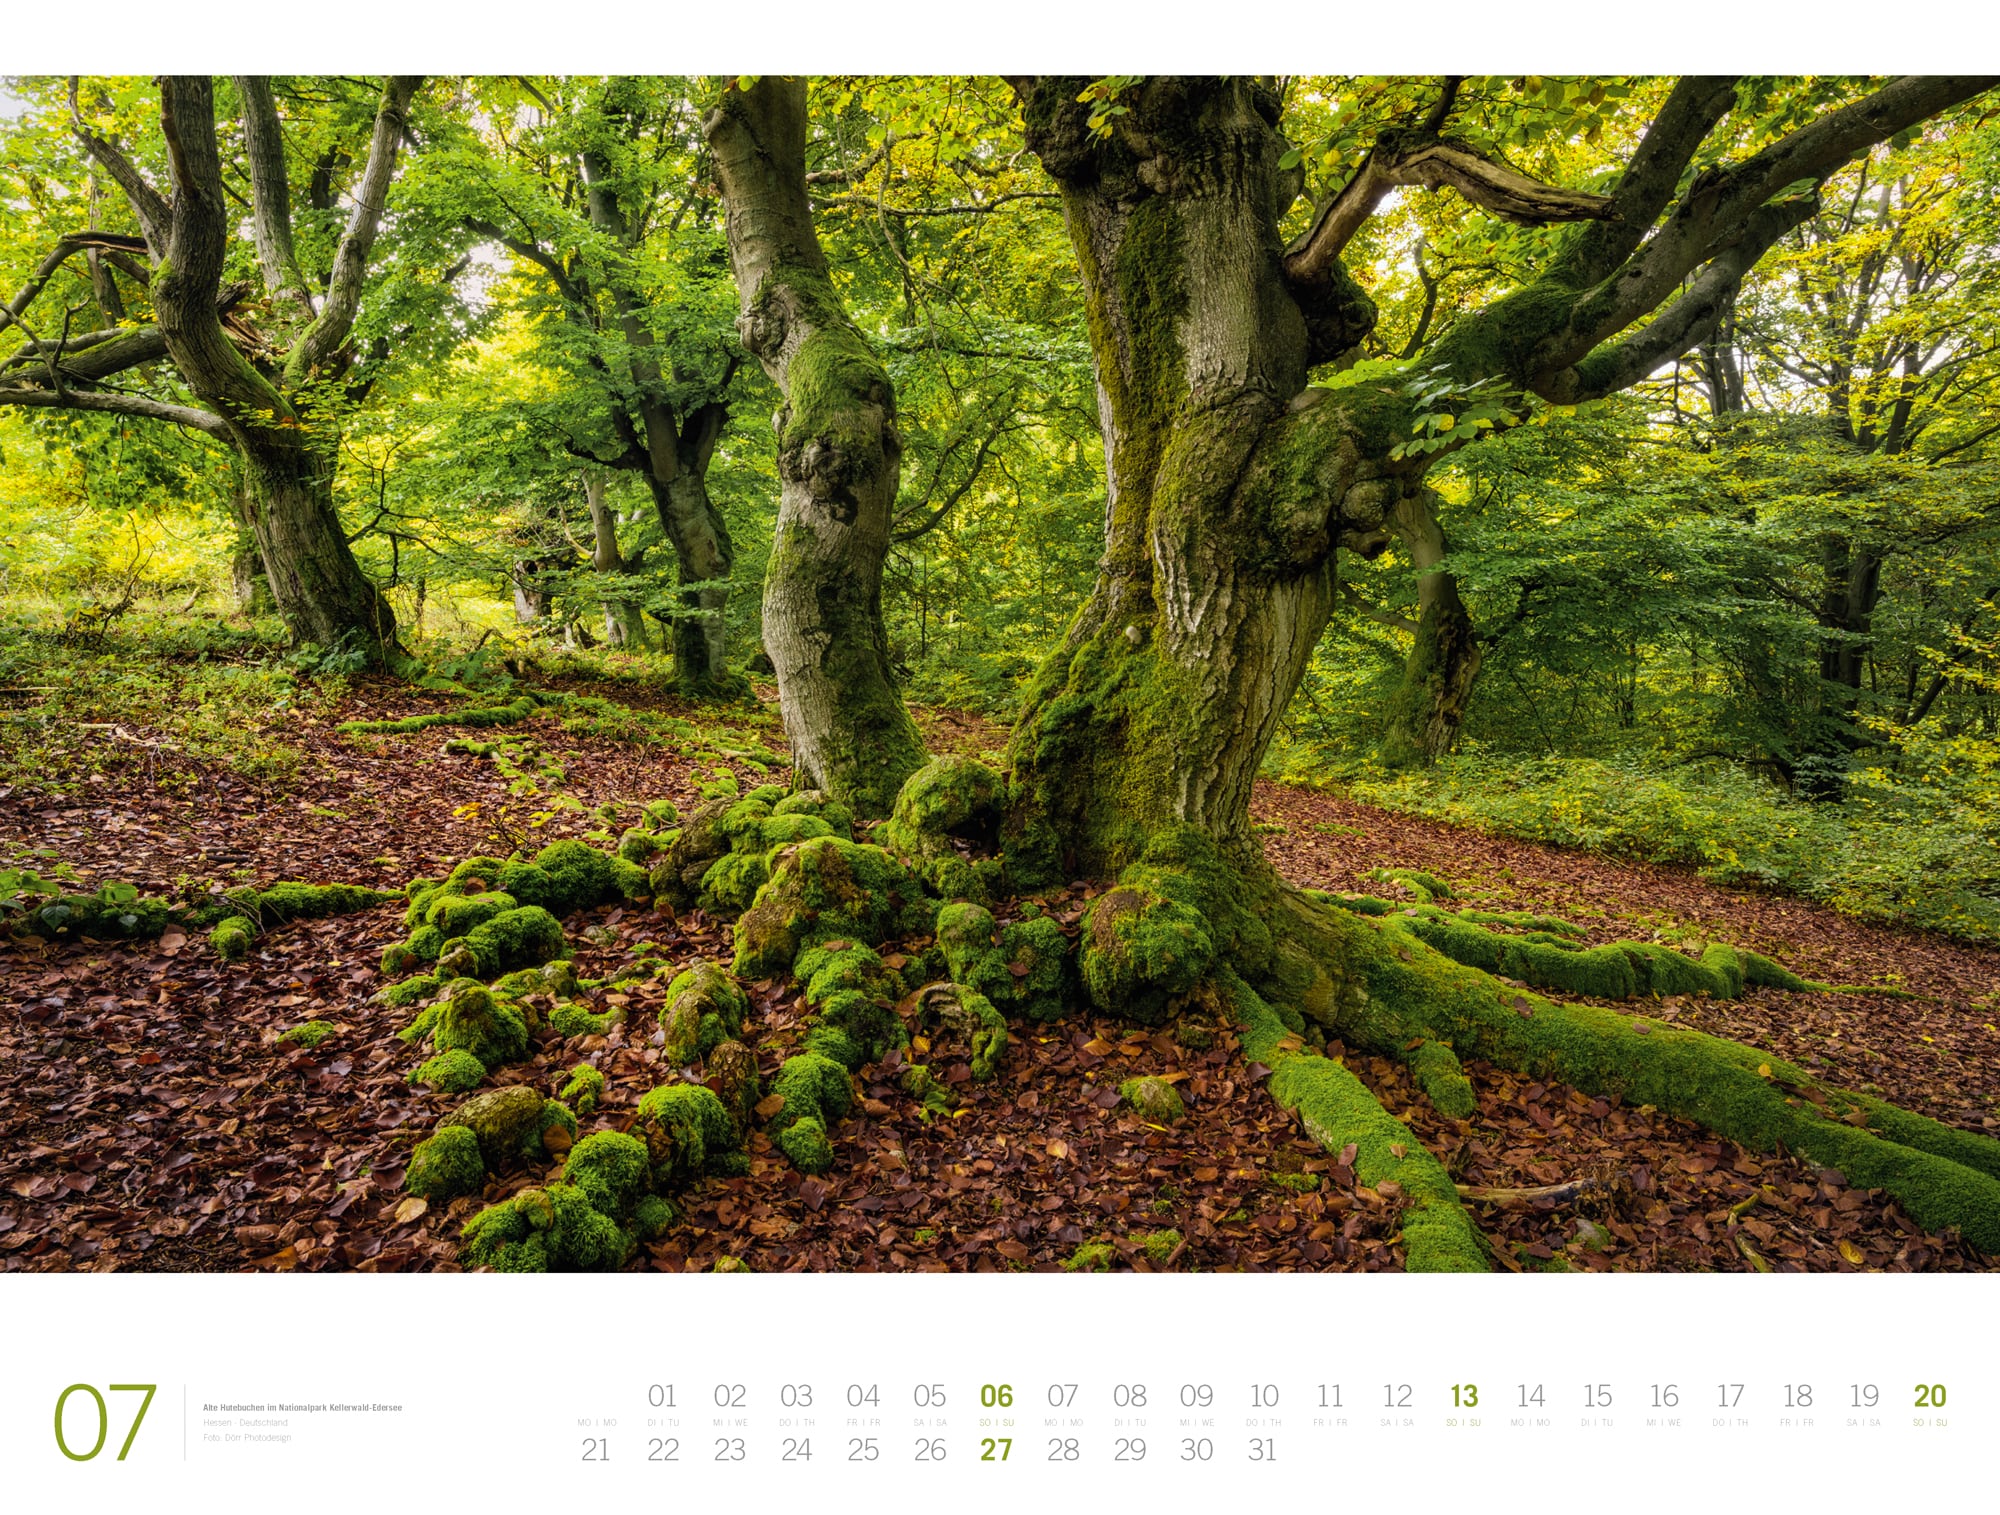 Ackermann Calendar Forest - Gallery 2025 - Inside View 07